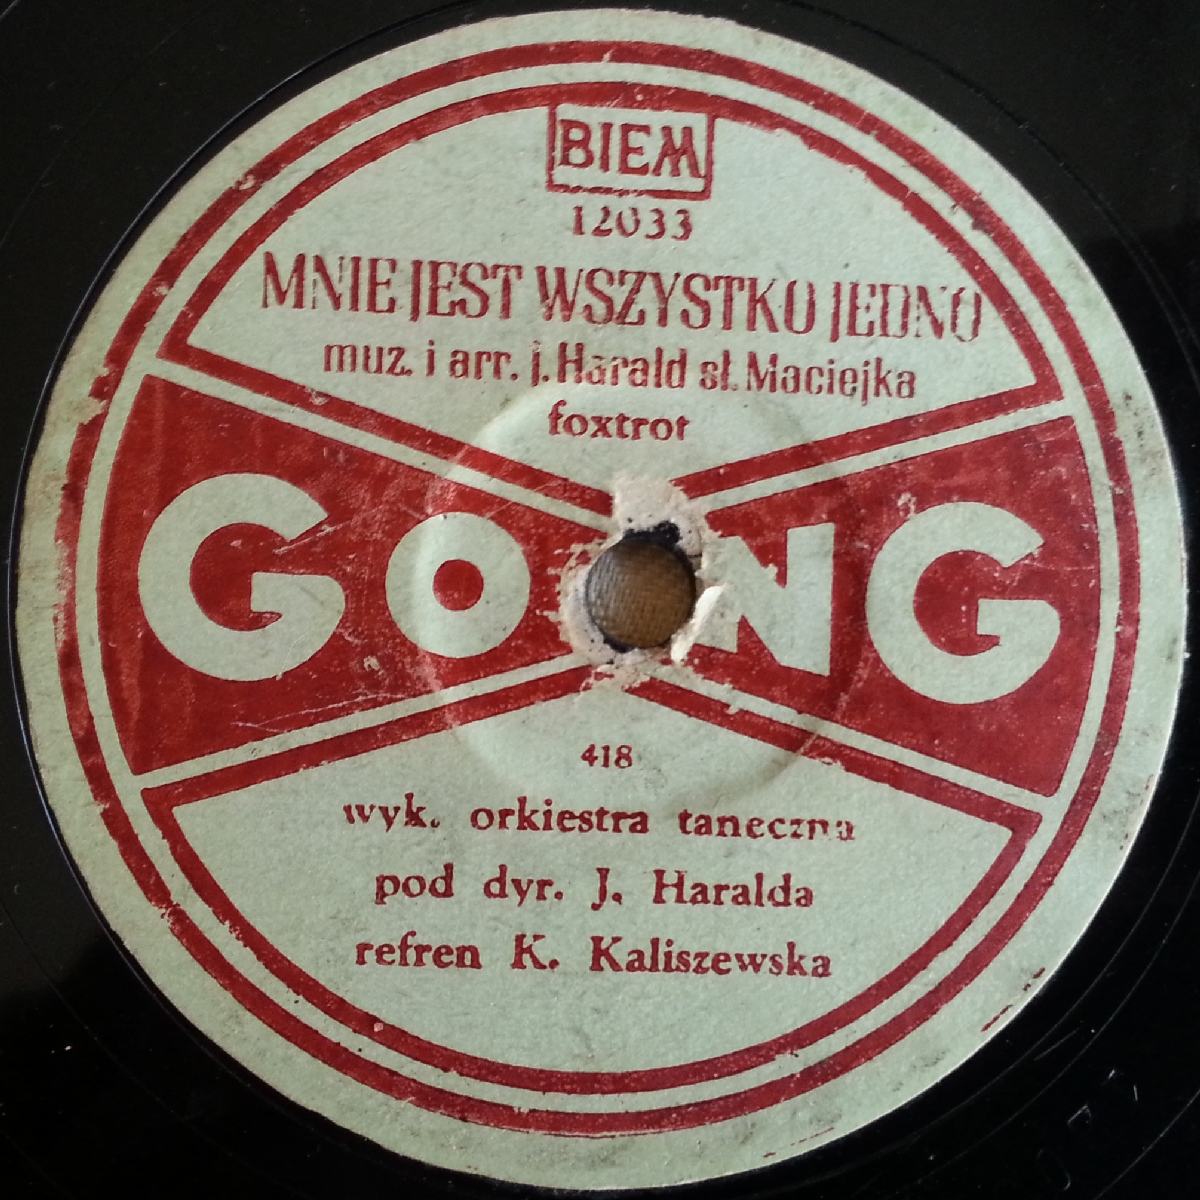 Gong wytwórnia fonograficzna